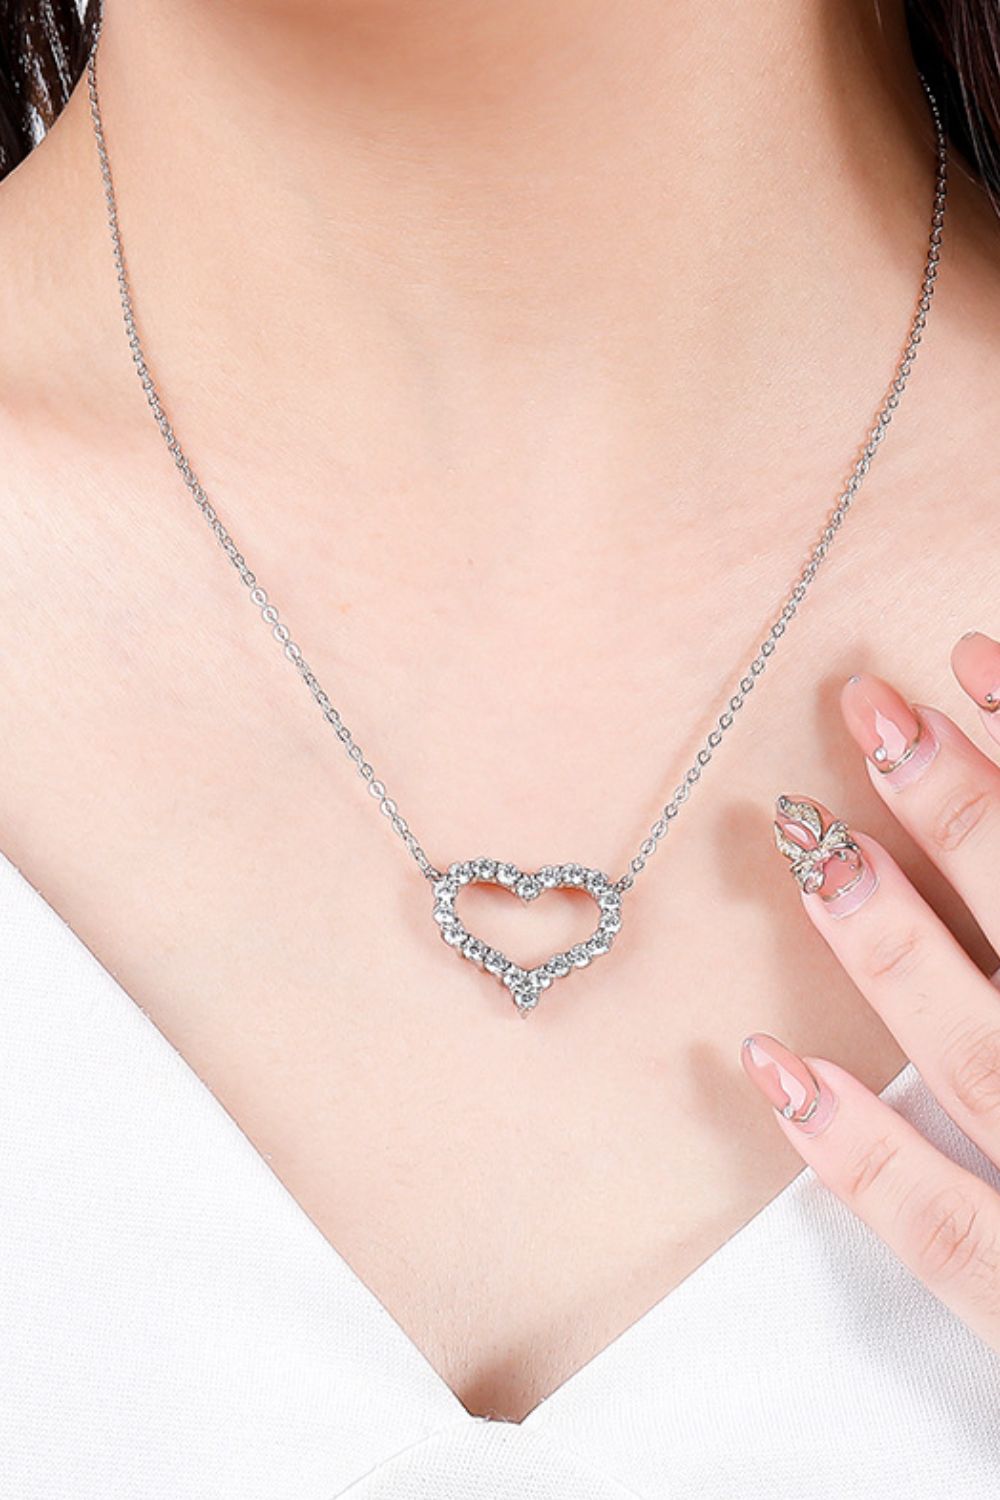 1 Carat Moissanite Heart Pendant Chain-Link Necklace - DromedarShop.com Online Boutique